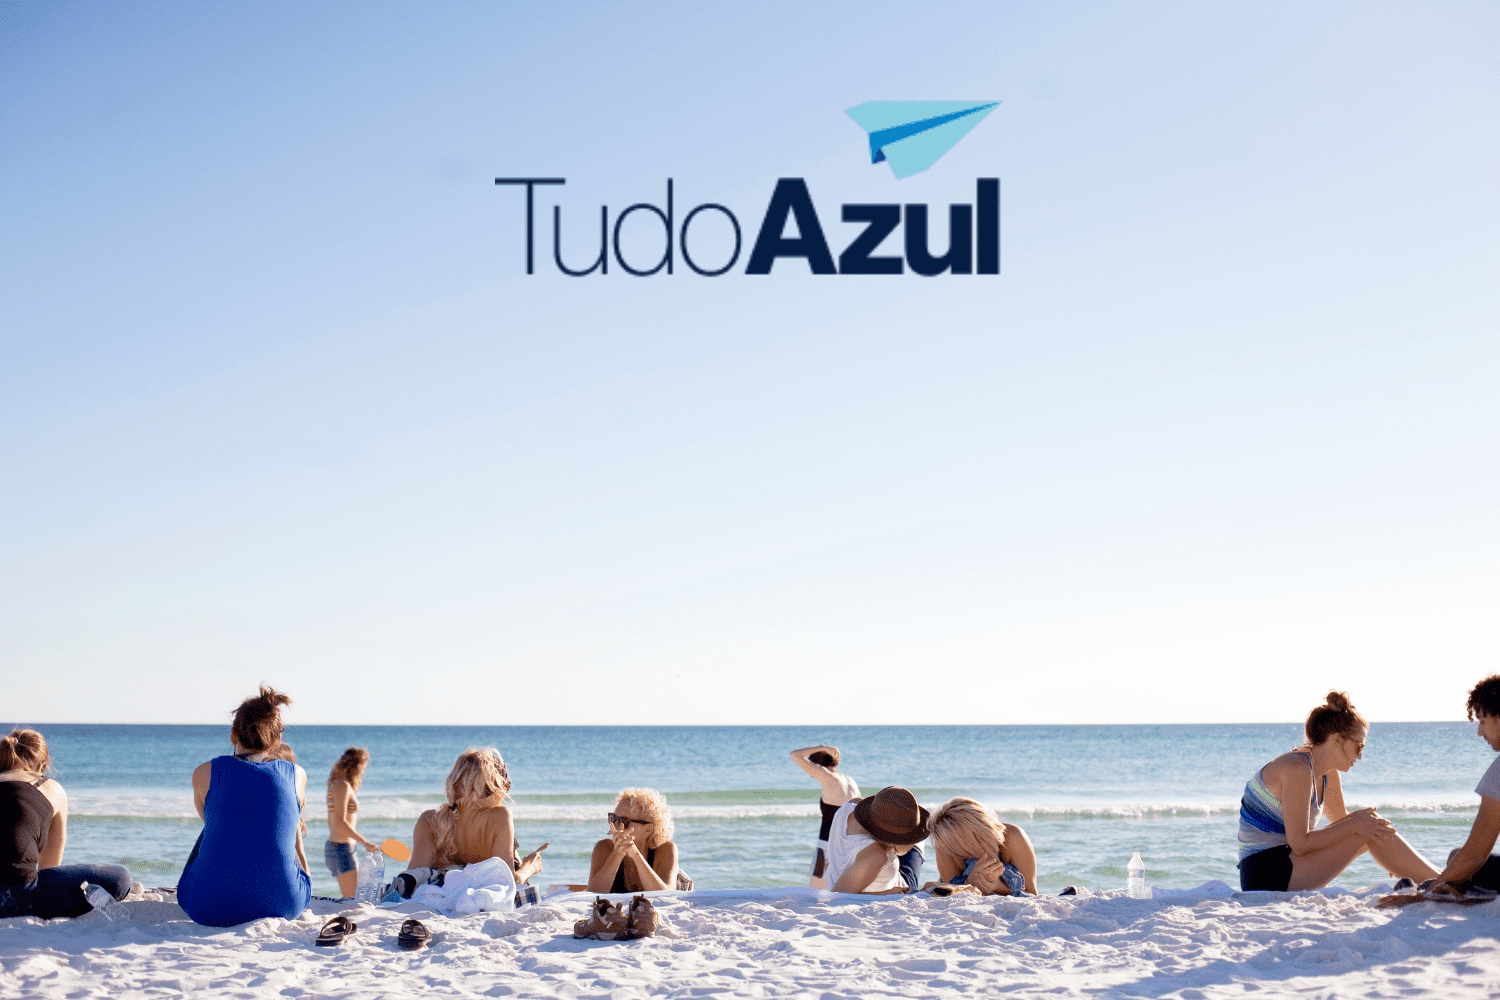 pessoas na praia com logo TudoAzul bônus TudoAzul